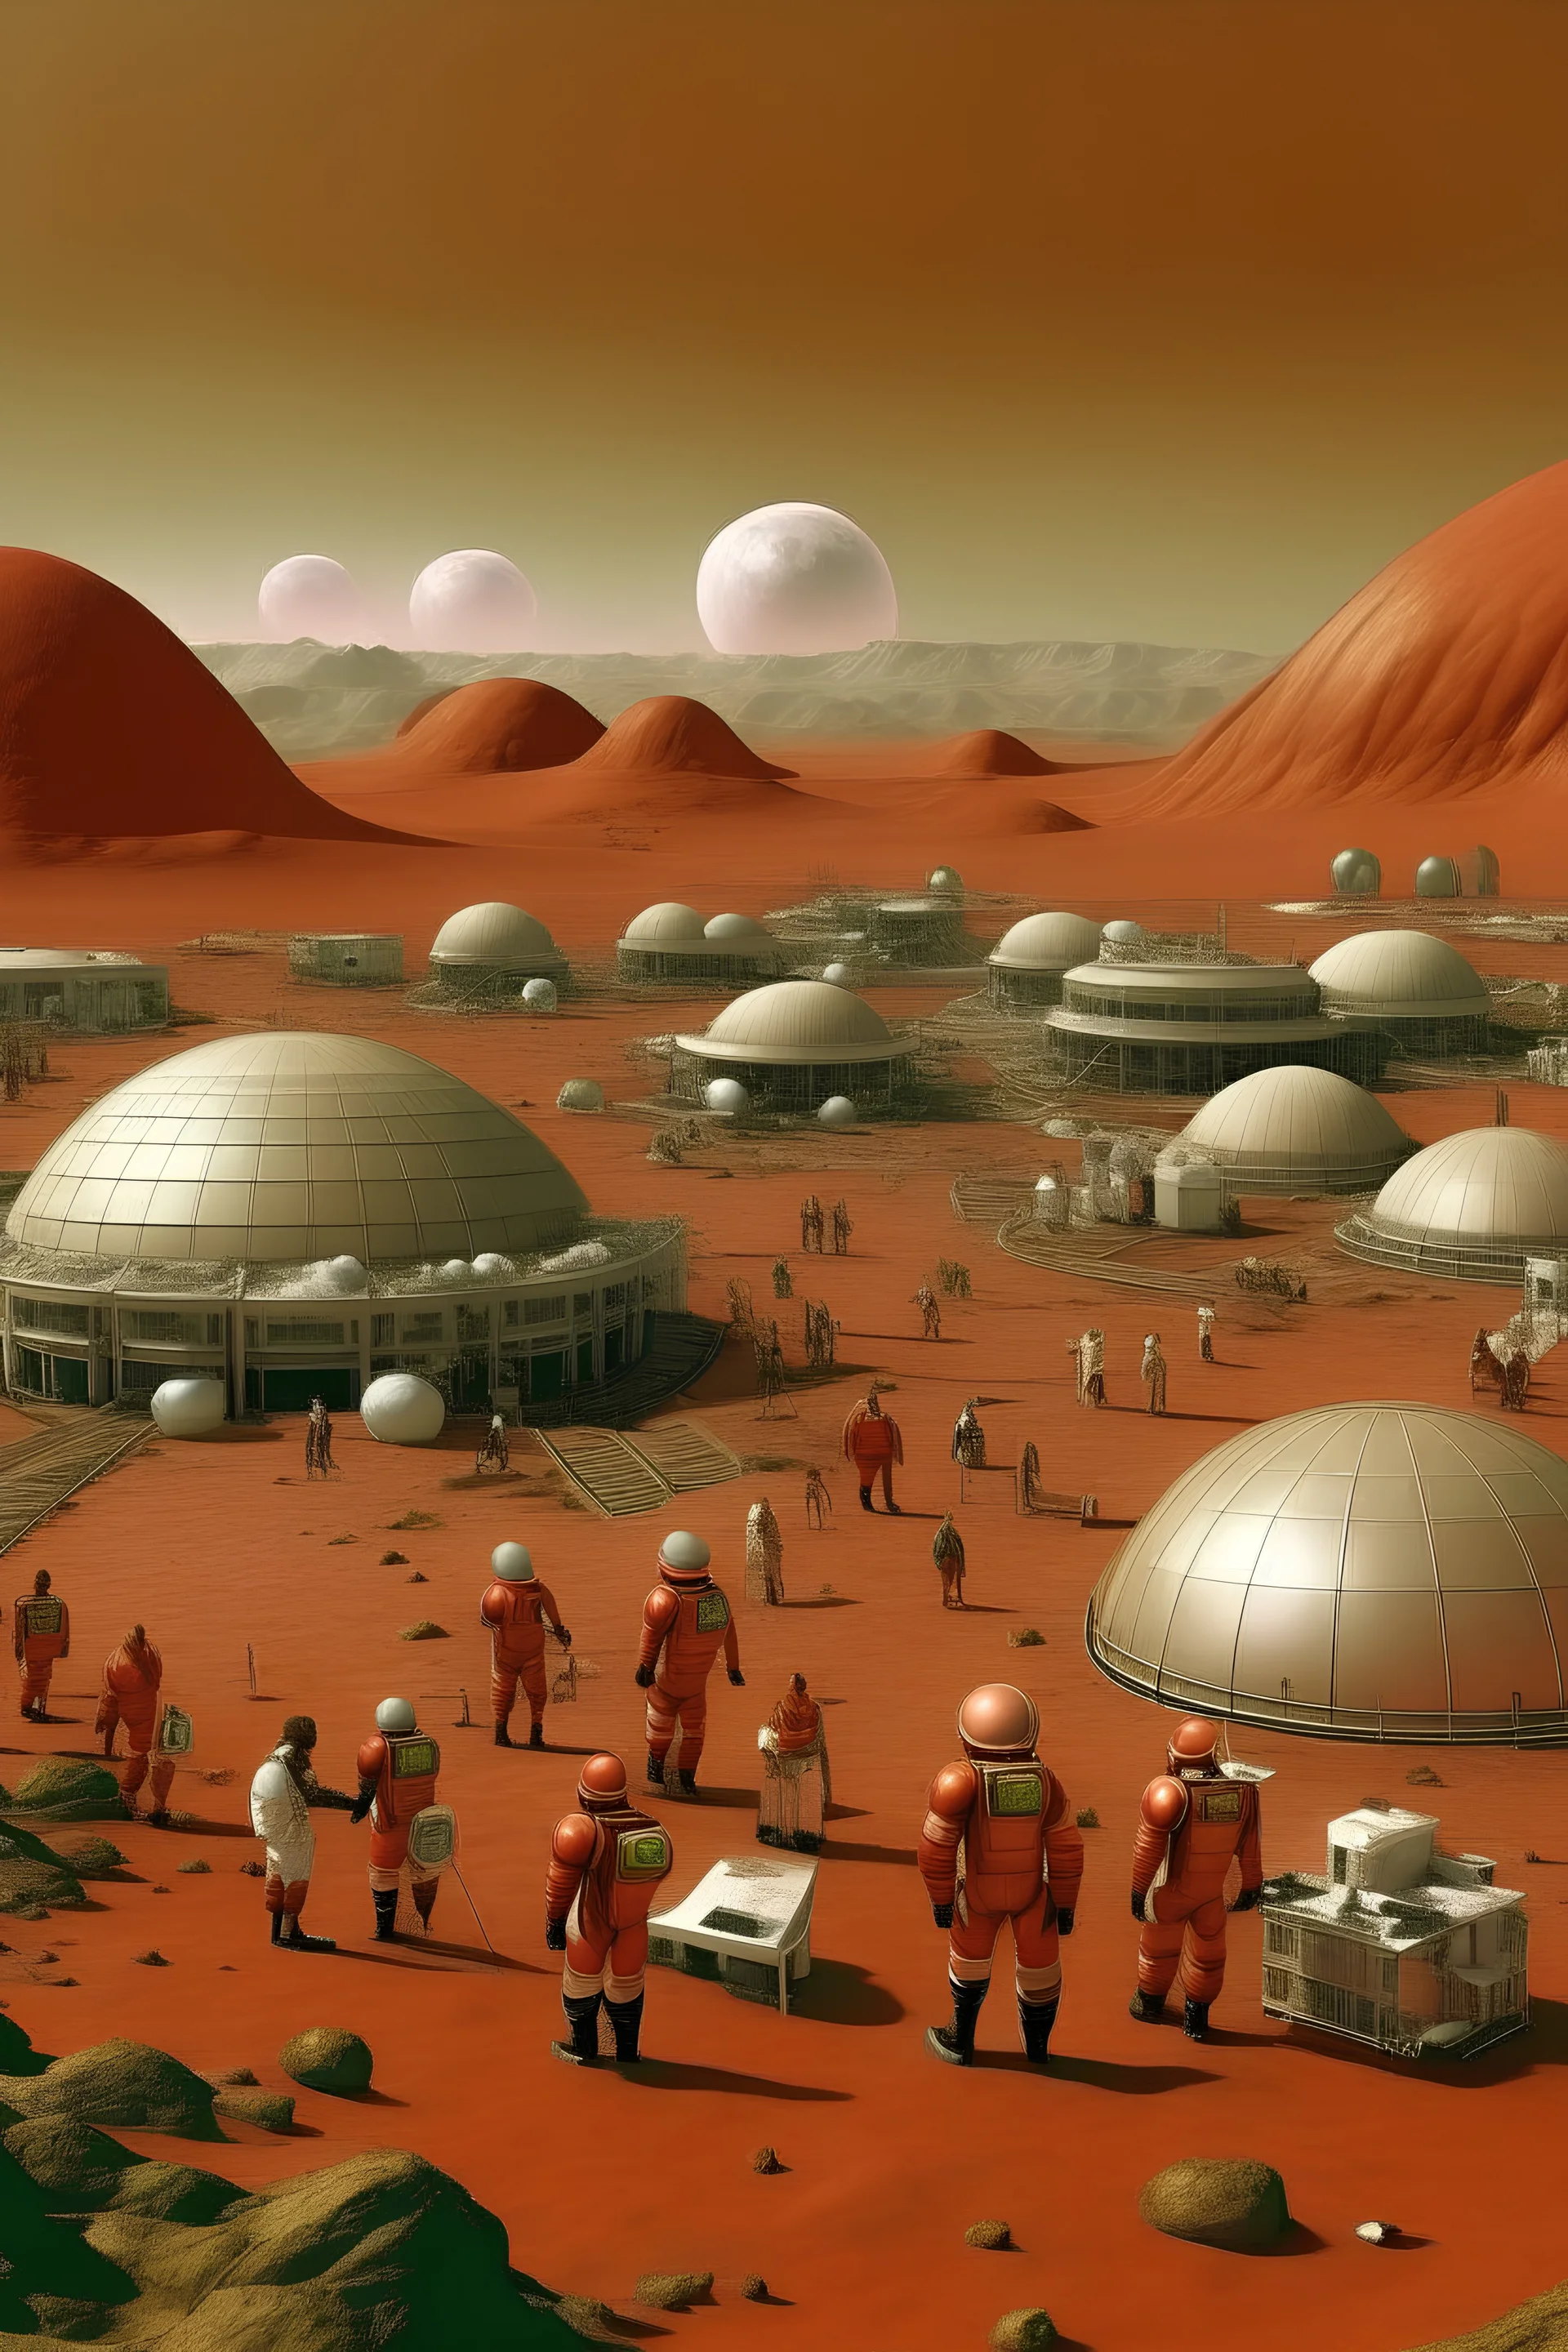 الحياة في كوكب المريخ إذا كانت مملوءة بالبشر و المباني و المياه والمزروعات و جميع أنواع الثروات الطبيعية